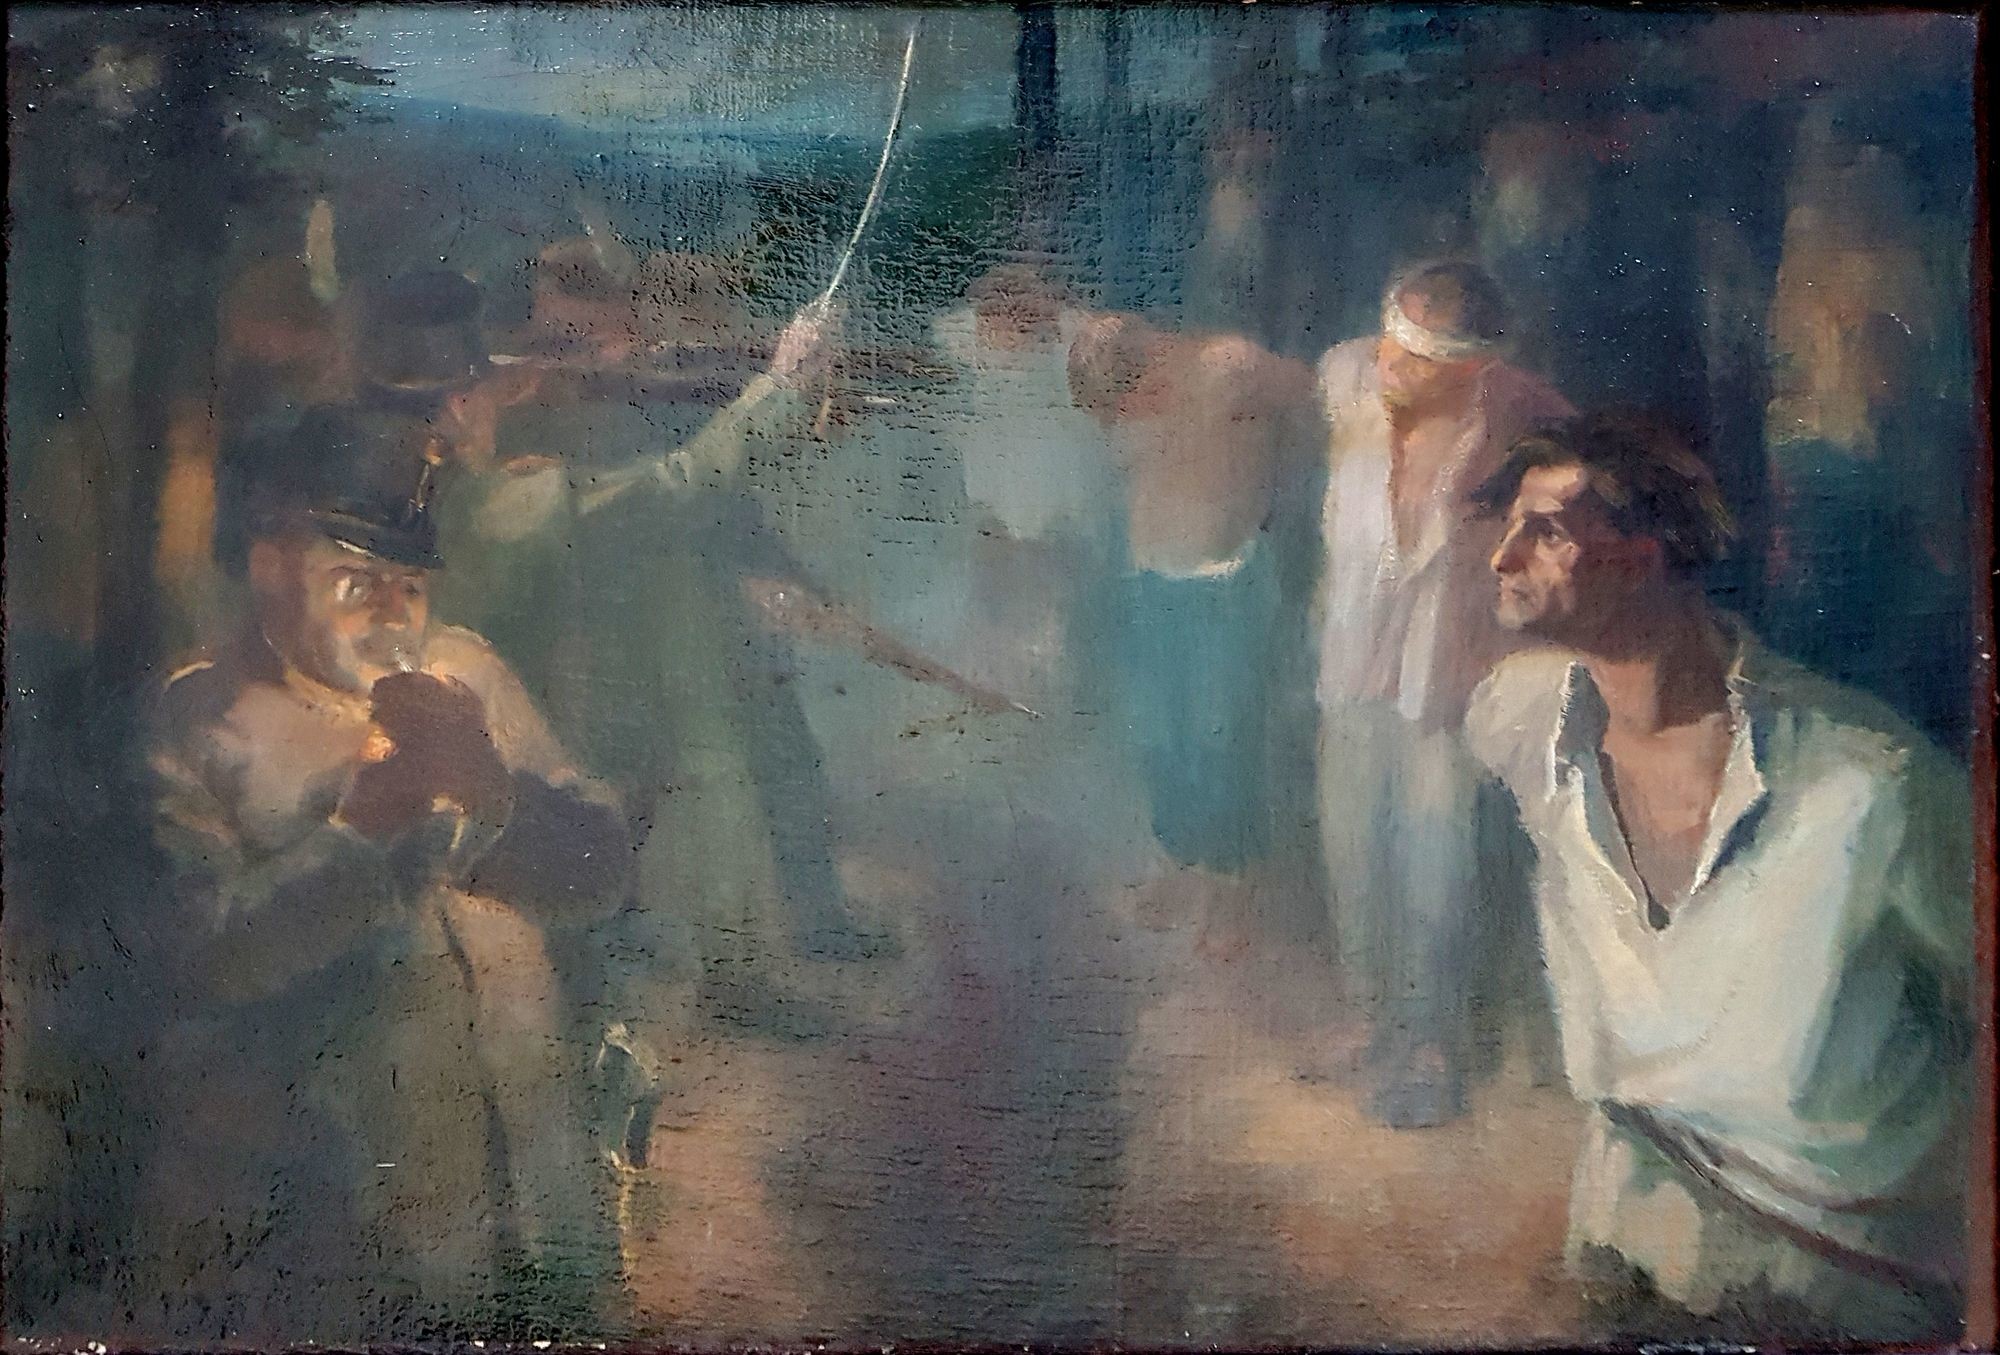 A somogyi direktórium - Latinca Sándor és társai kivégzése 1919-ben (Rippl-Rónai Múzeum CC BY-NC-SA)